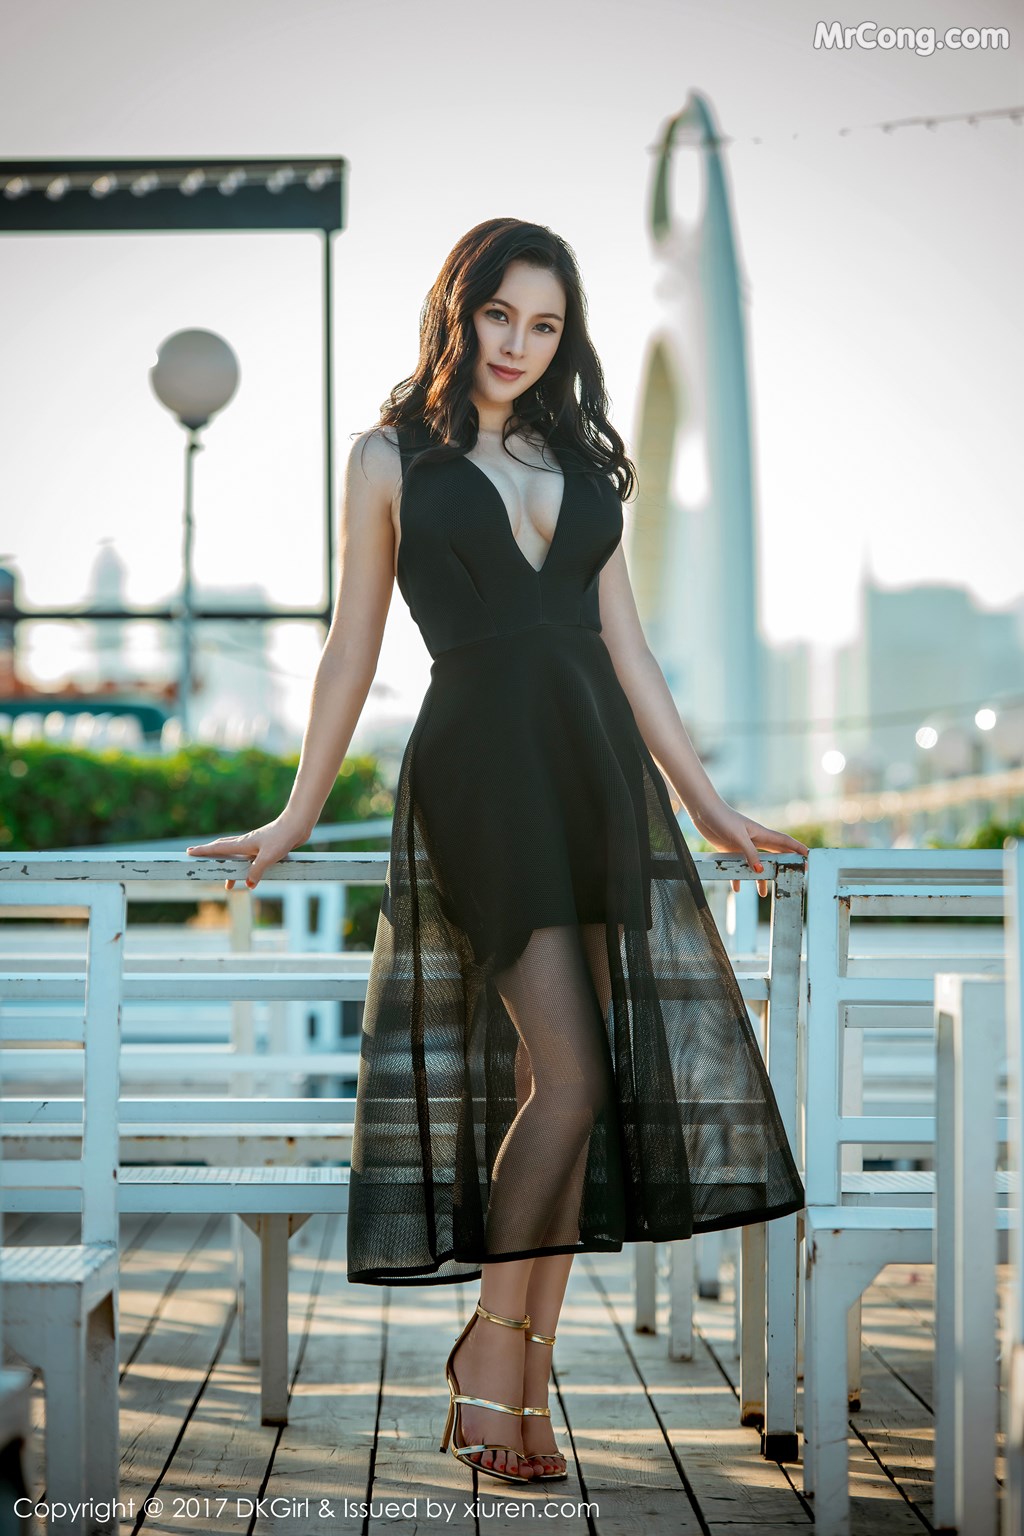 DKGirl Vol.044: Model Li Wen Na (厉雯娜) (45 pictures)